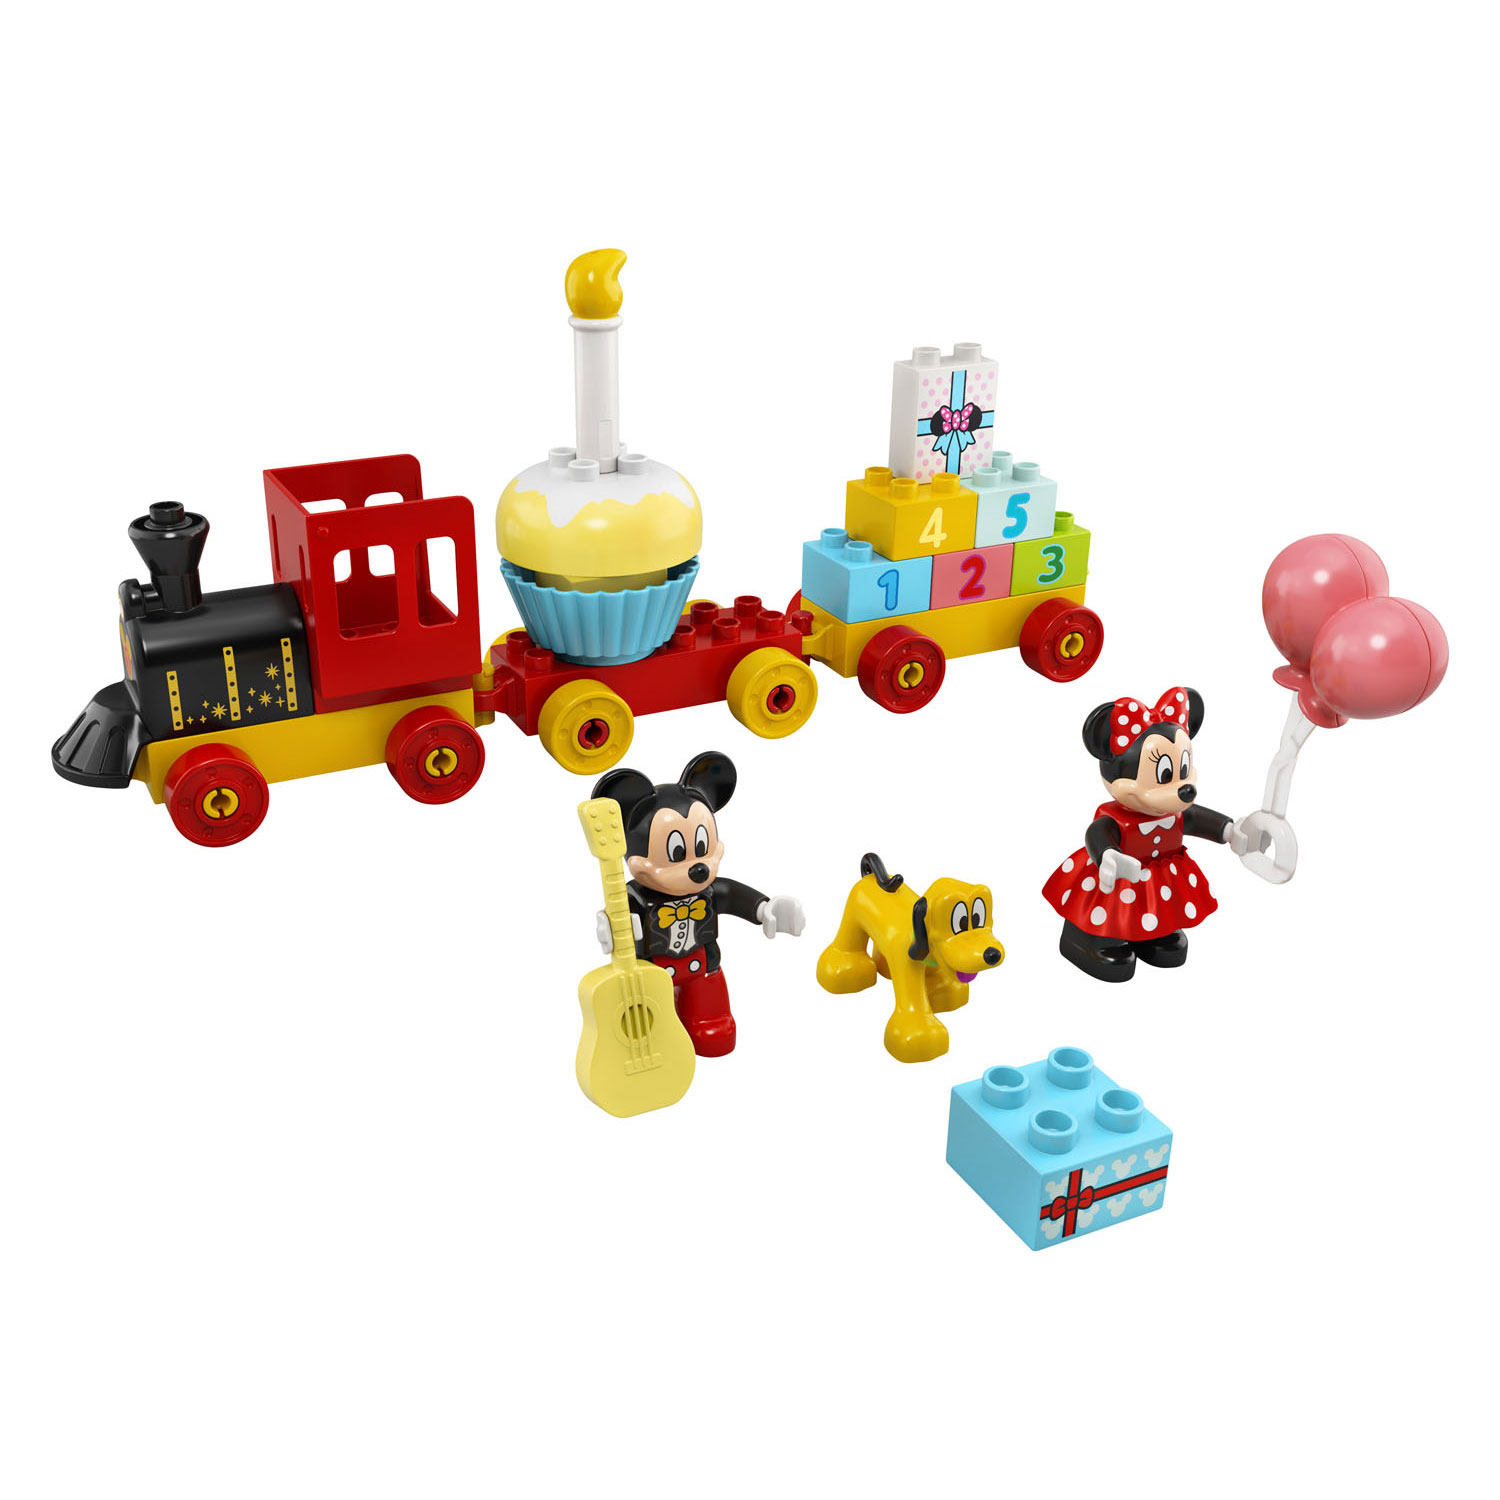 LEGO DUPLO 10941 Mickey & Minnie Verjaardagstrein